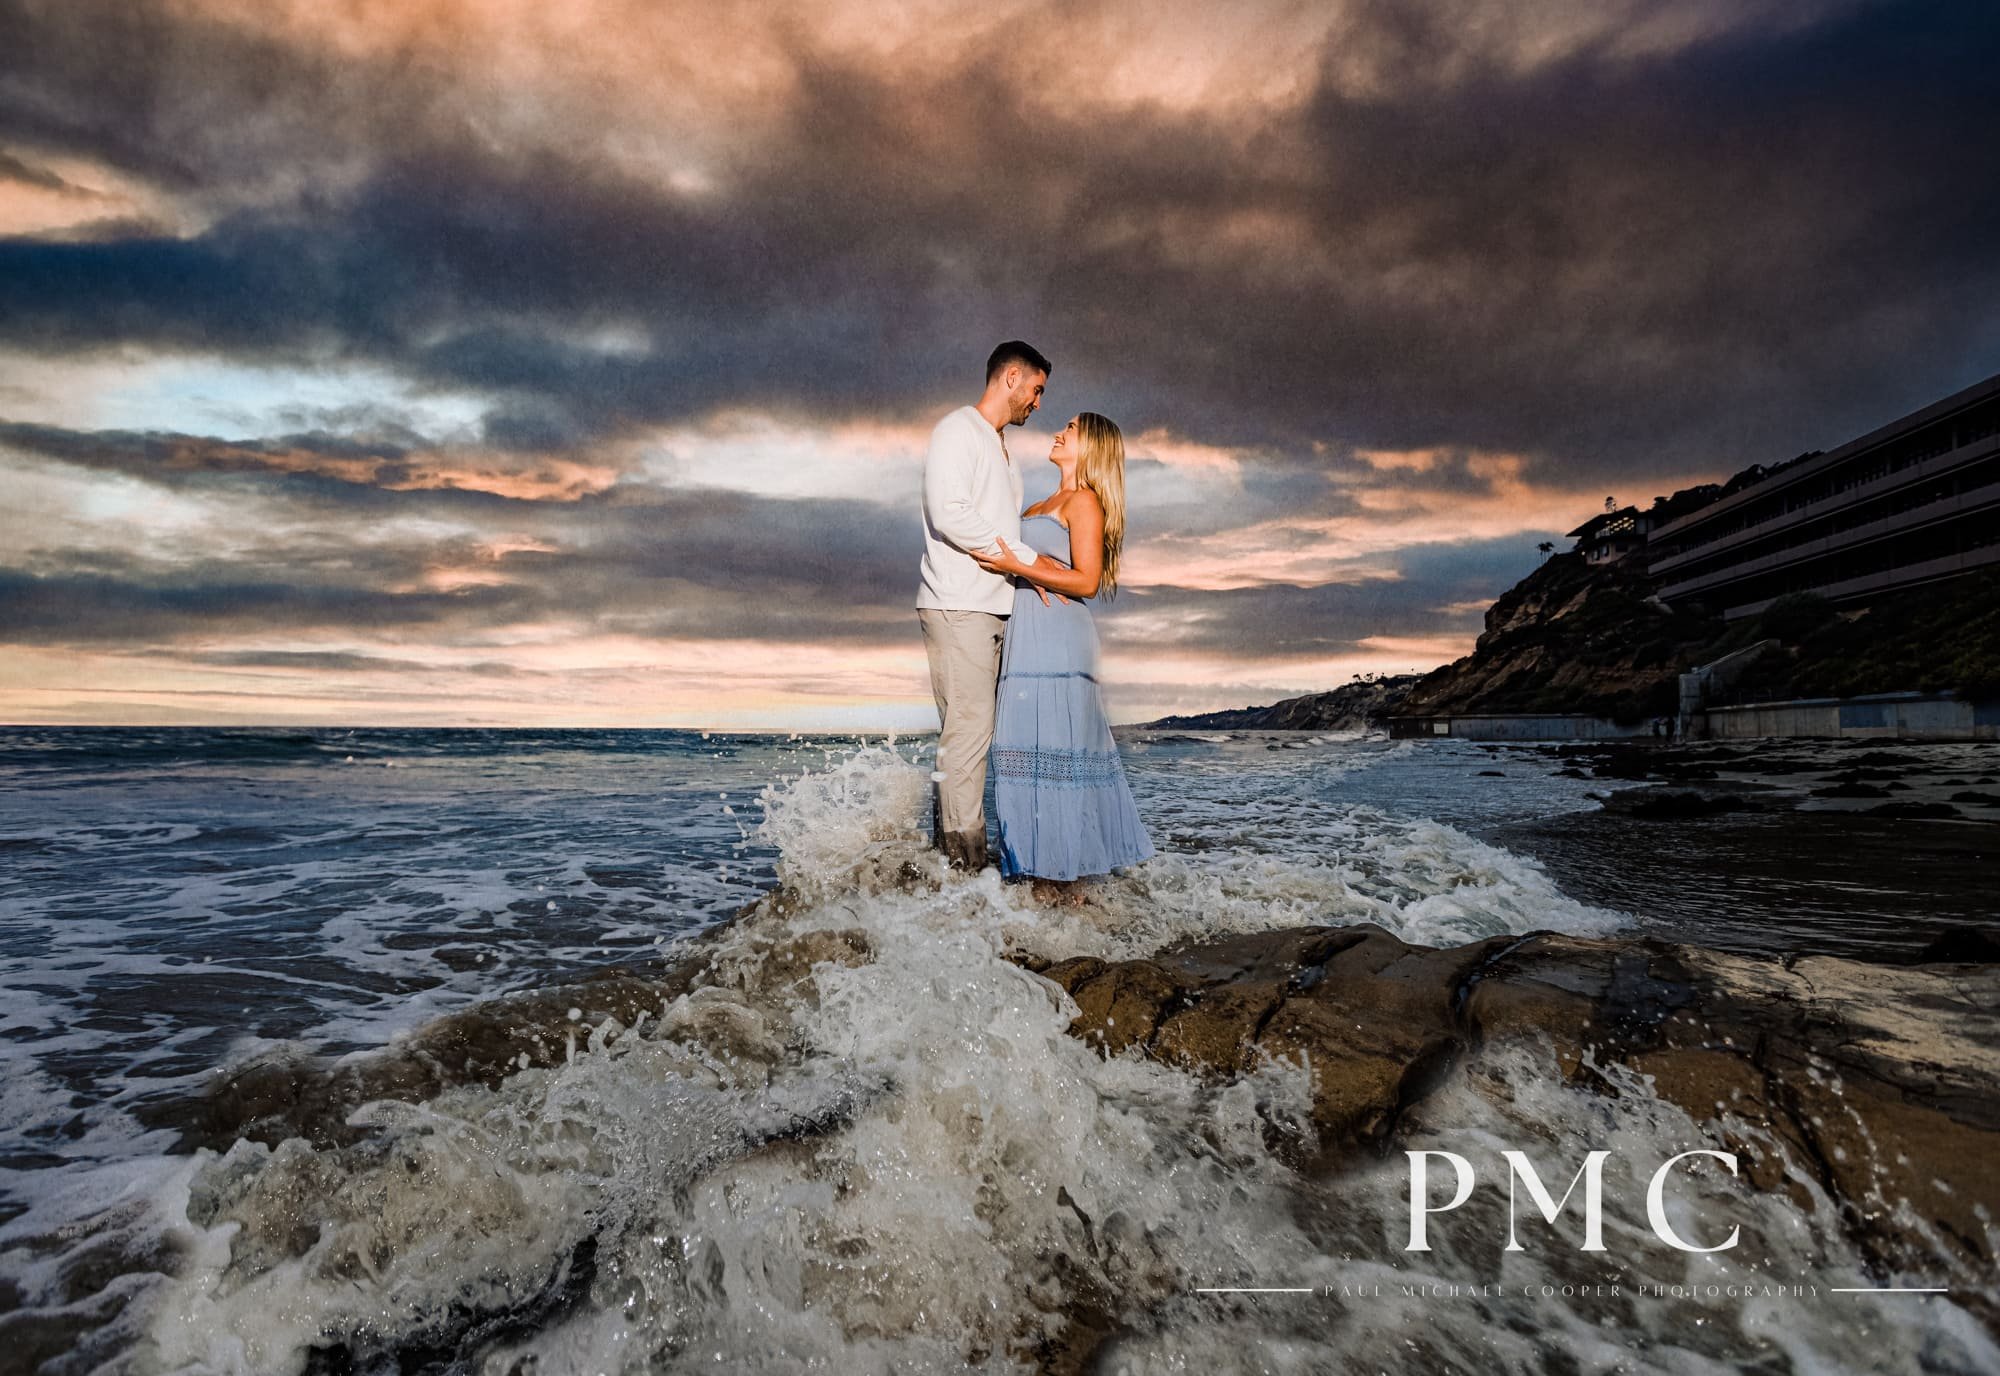 Scripps Pier Engagement Session - La Jolla - Best San Diego Wedding Photographer-16.jpg